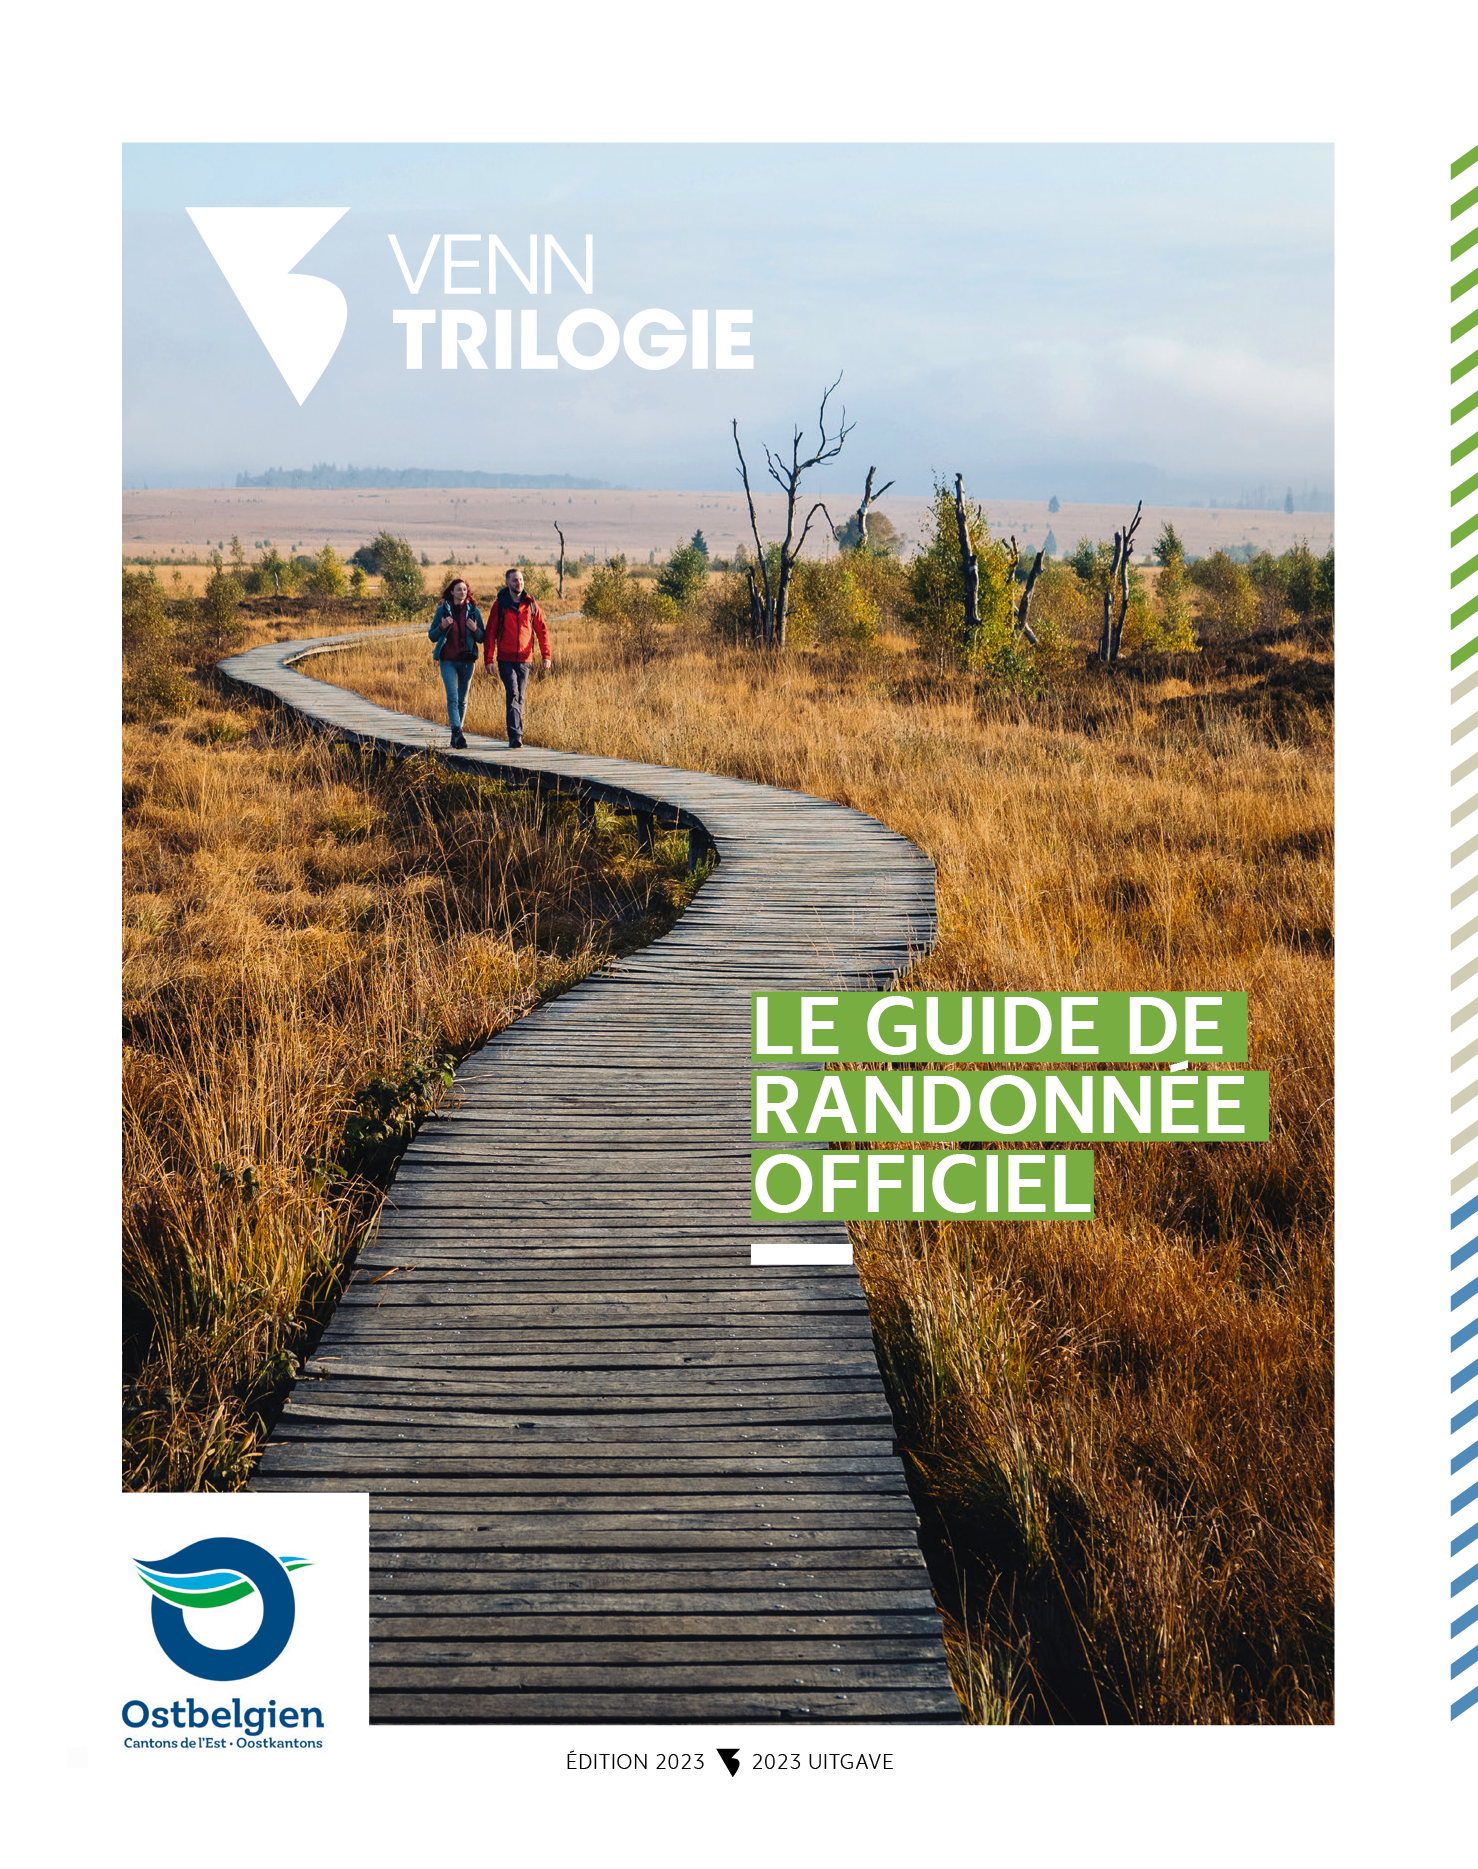 VENNTRILOGIE - Le guide de randonnée officiel